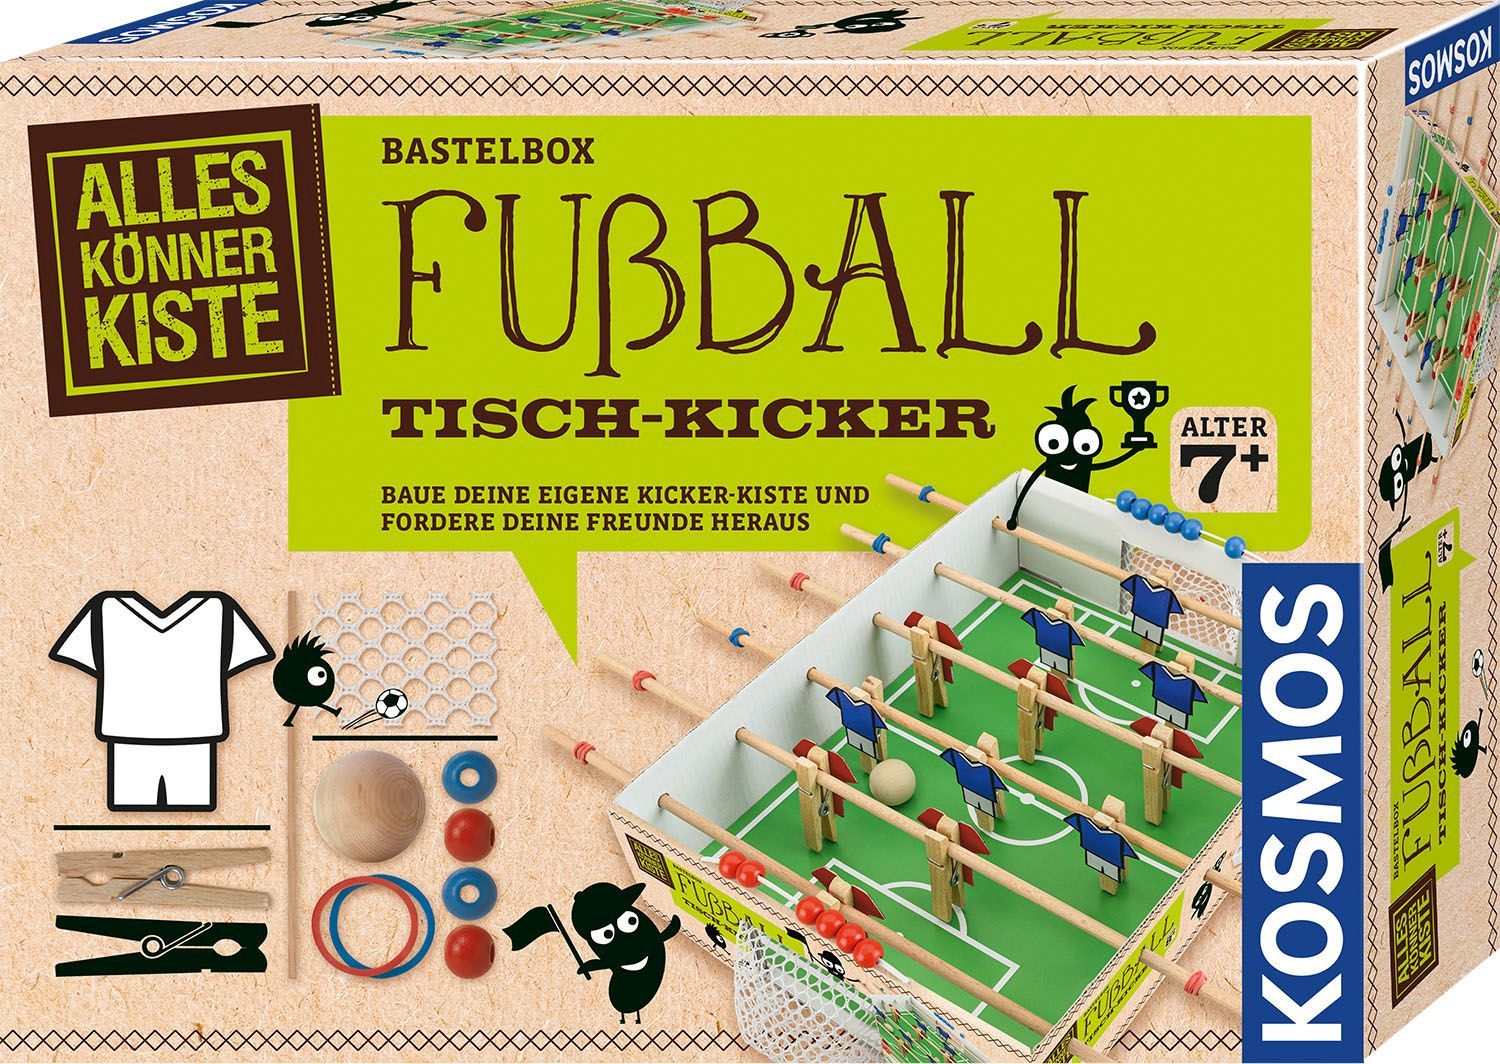 Bastelbox Fussball Tisch-Kicker